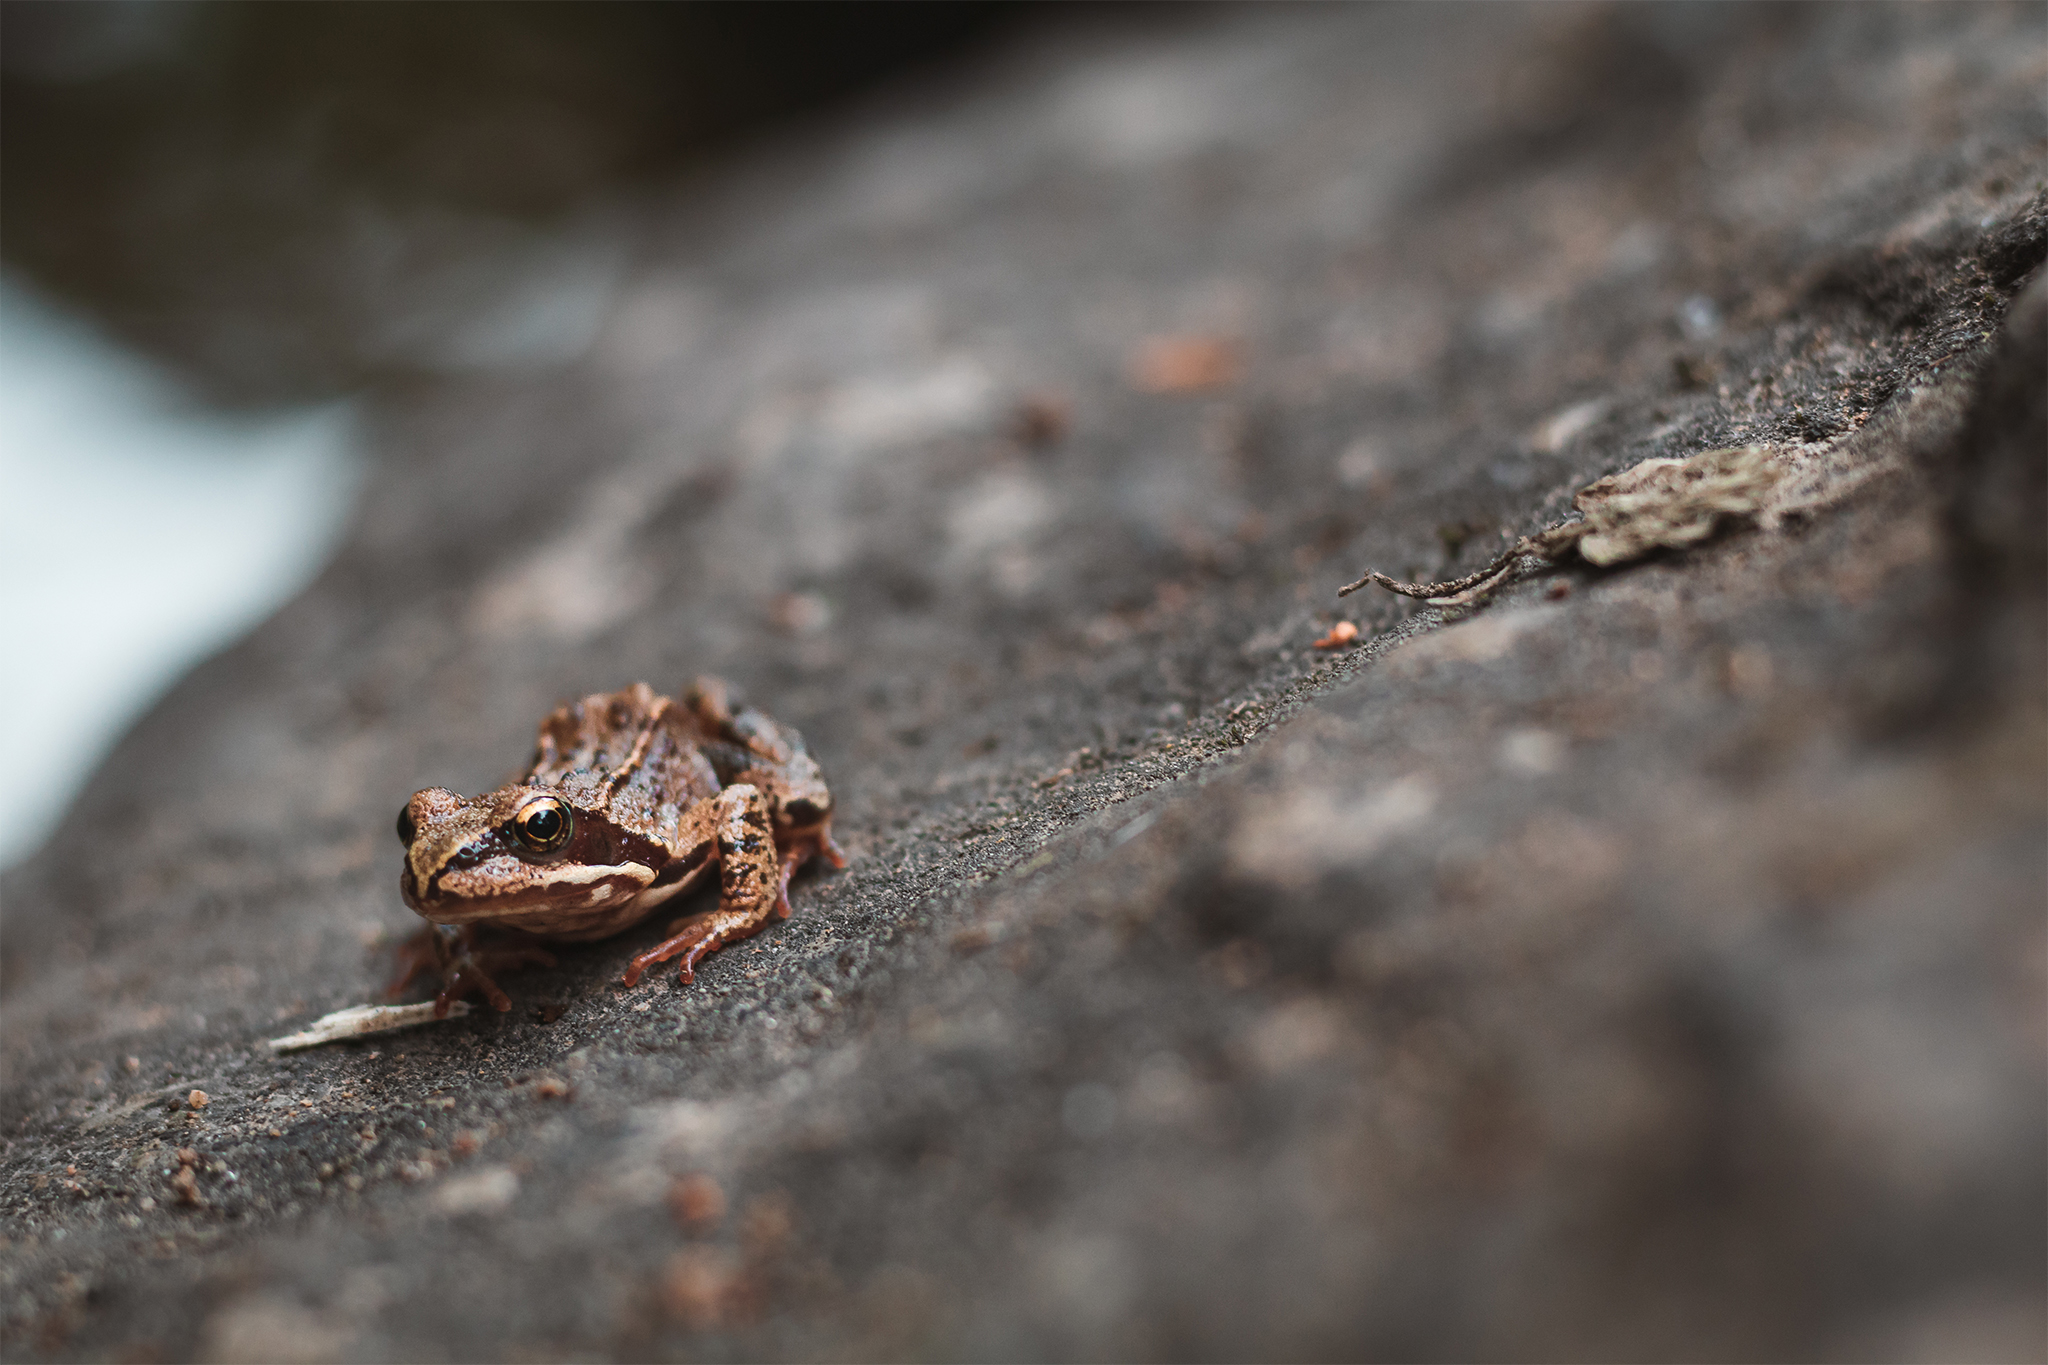 Ošklivá žába, která se po polibku změnila v docela hezkou žábu.